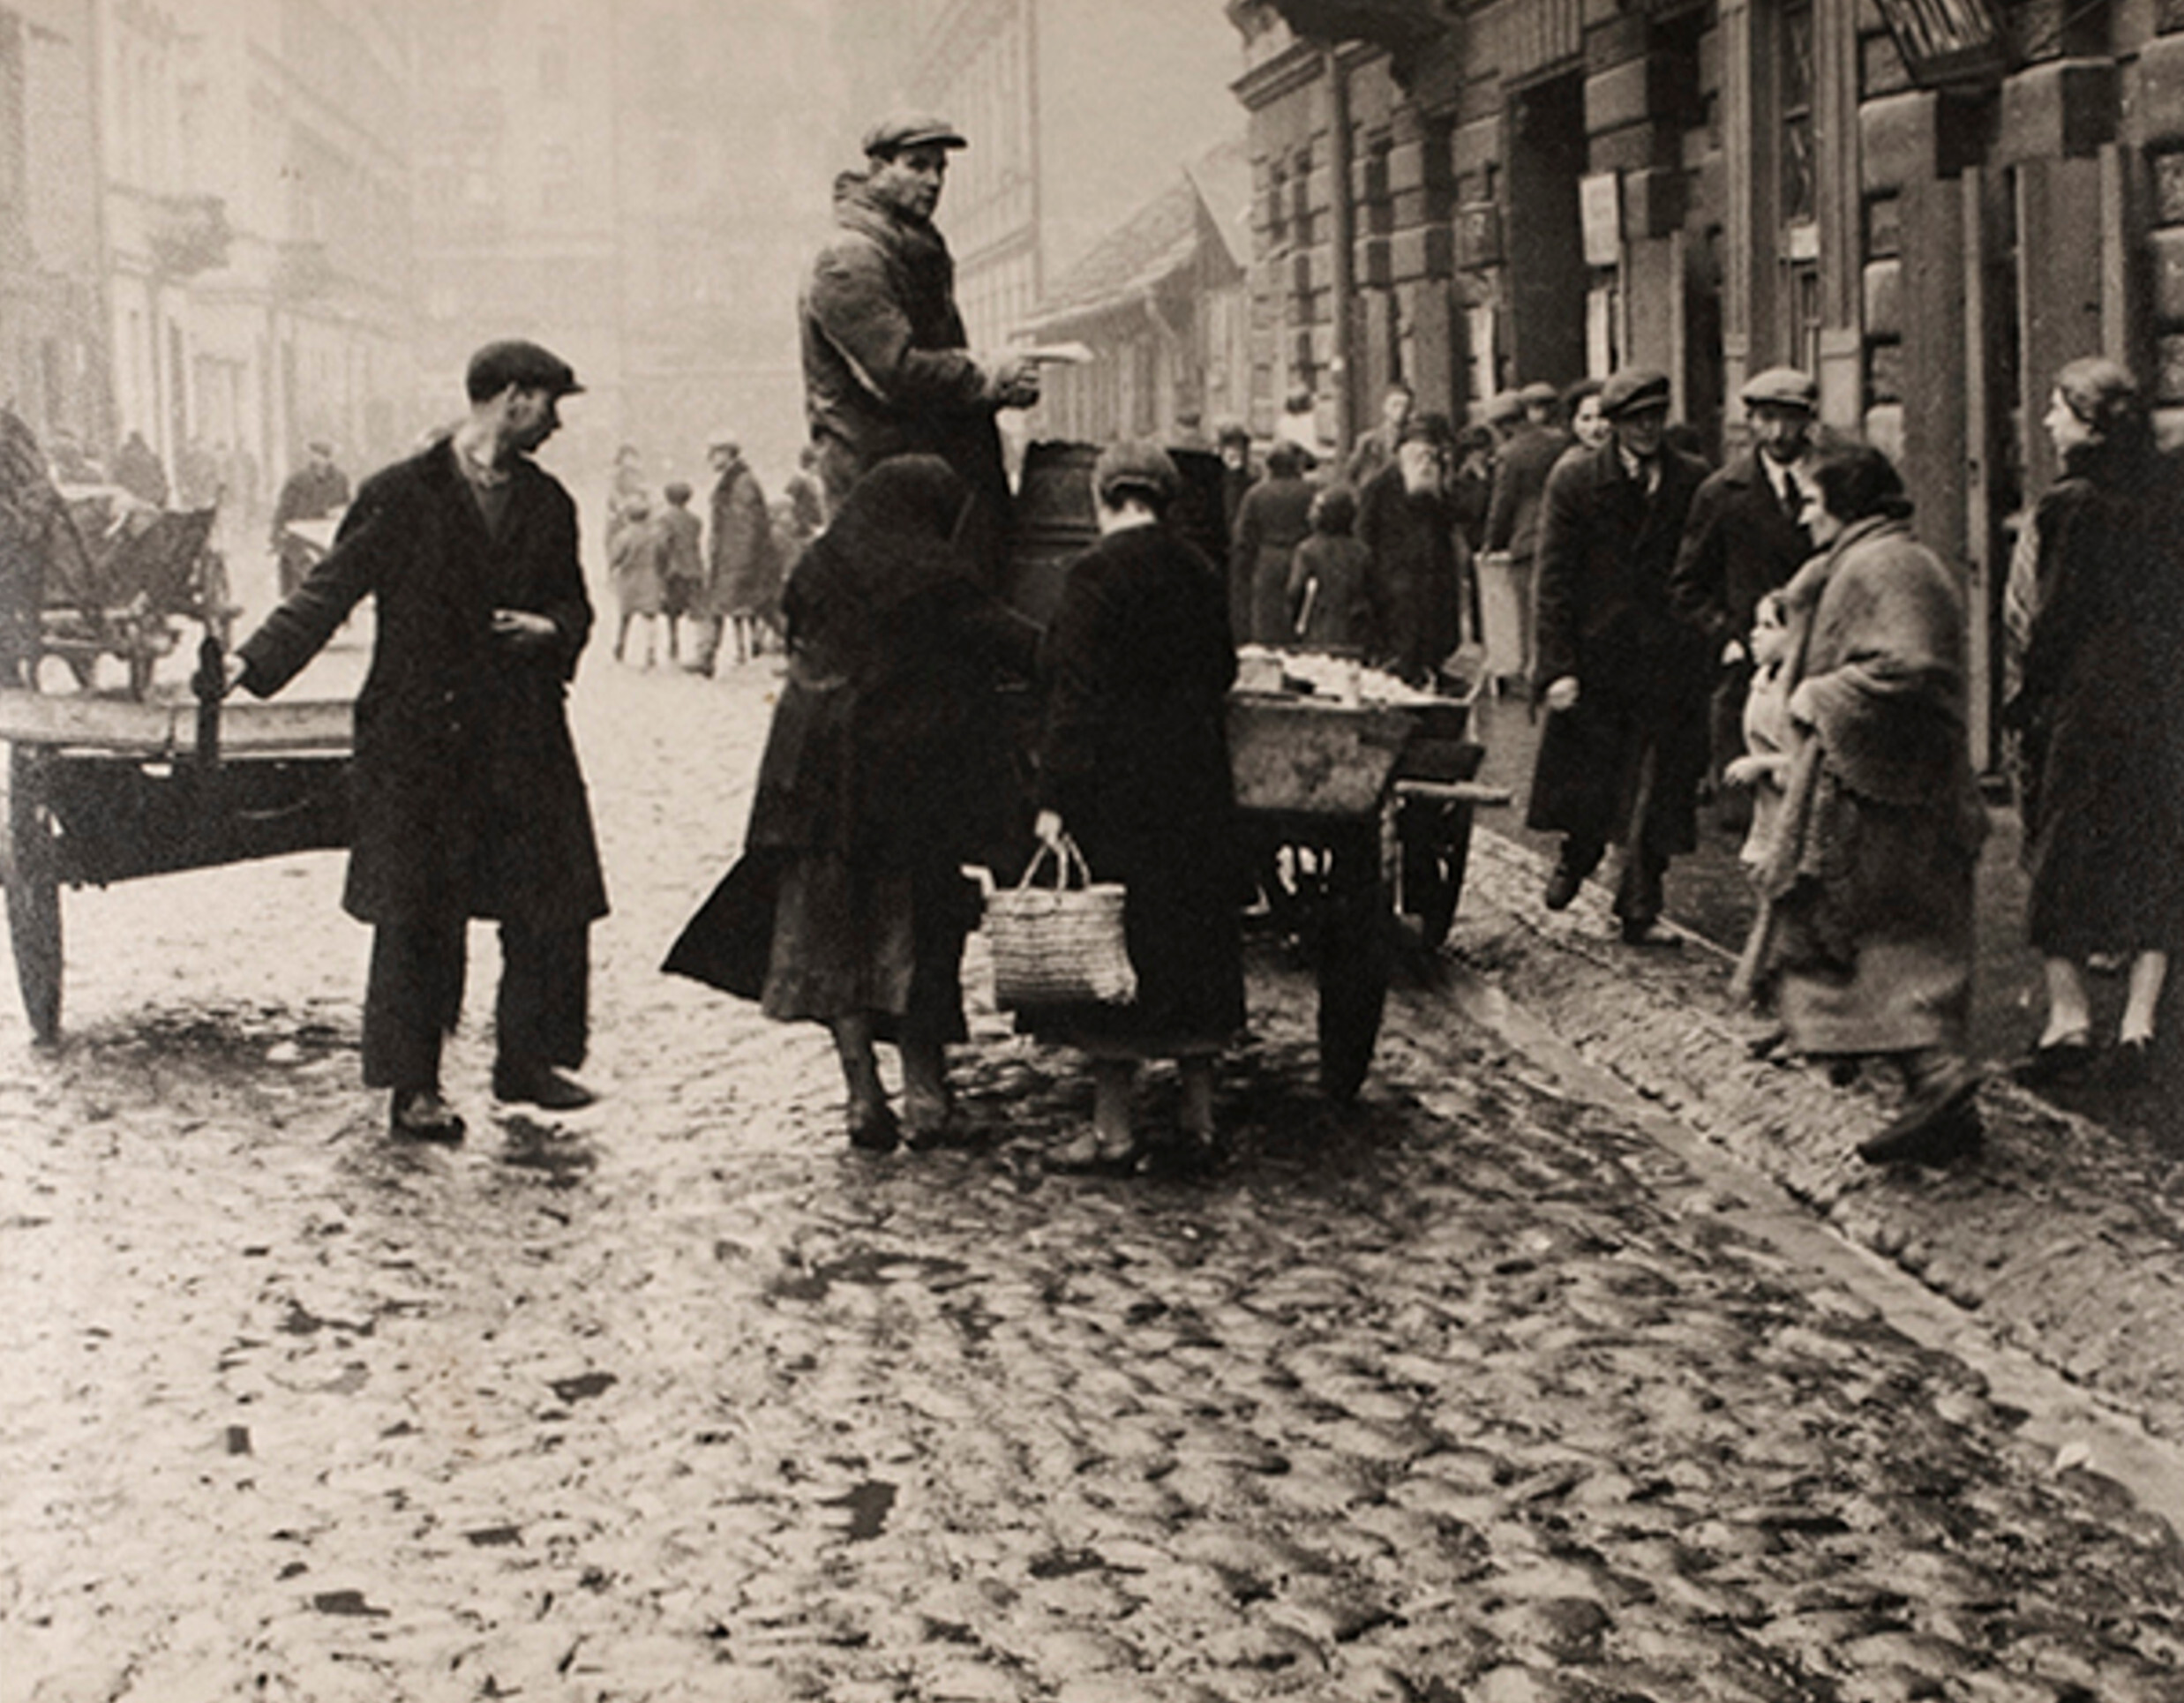 Продавец яблок на улице Геся, одной из главных улиц еврейского района Варшавы, ок. 1935-38 гг. Фотограф Роман Вишняк